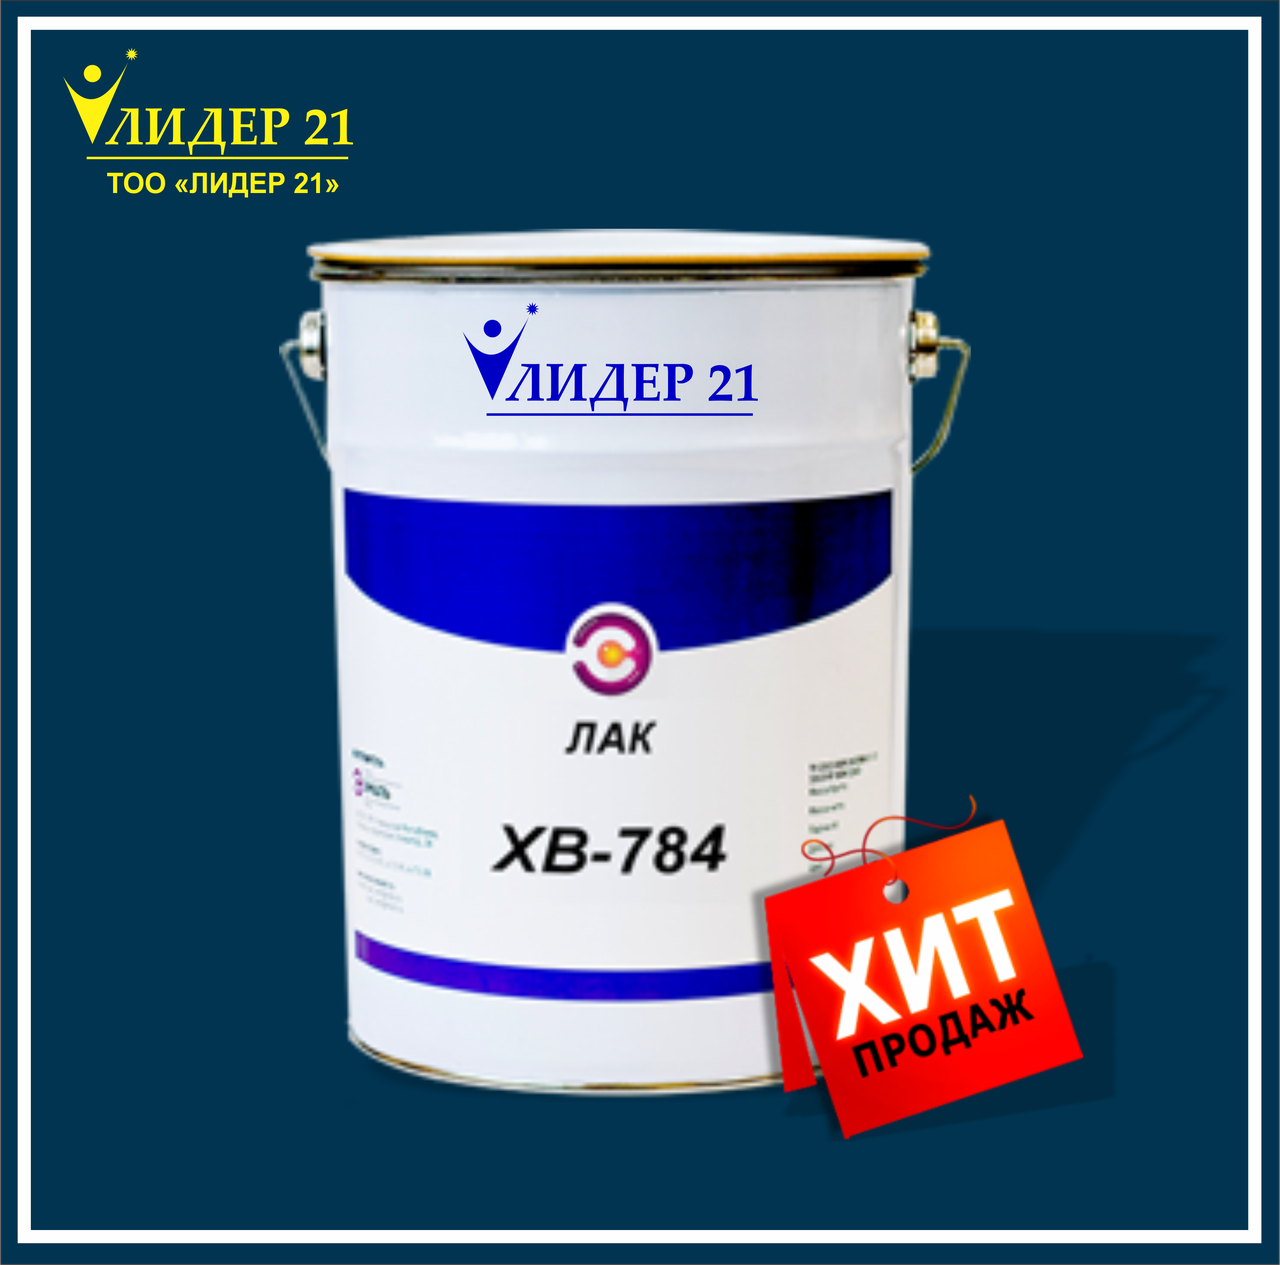 Лак ХВ-784 — одноупаковочный лаккрасочный материал на основе поливинилхлоридной смолы.